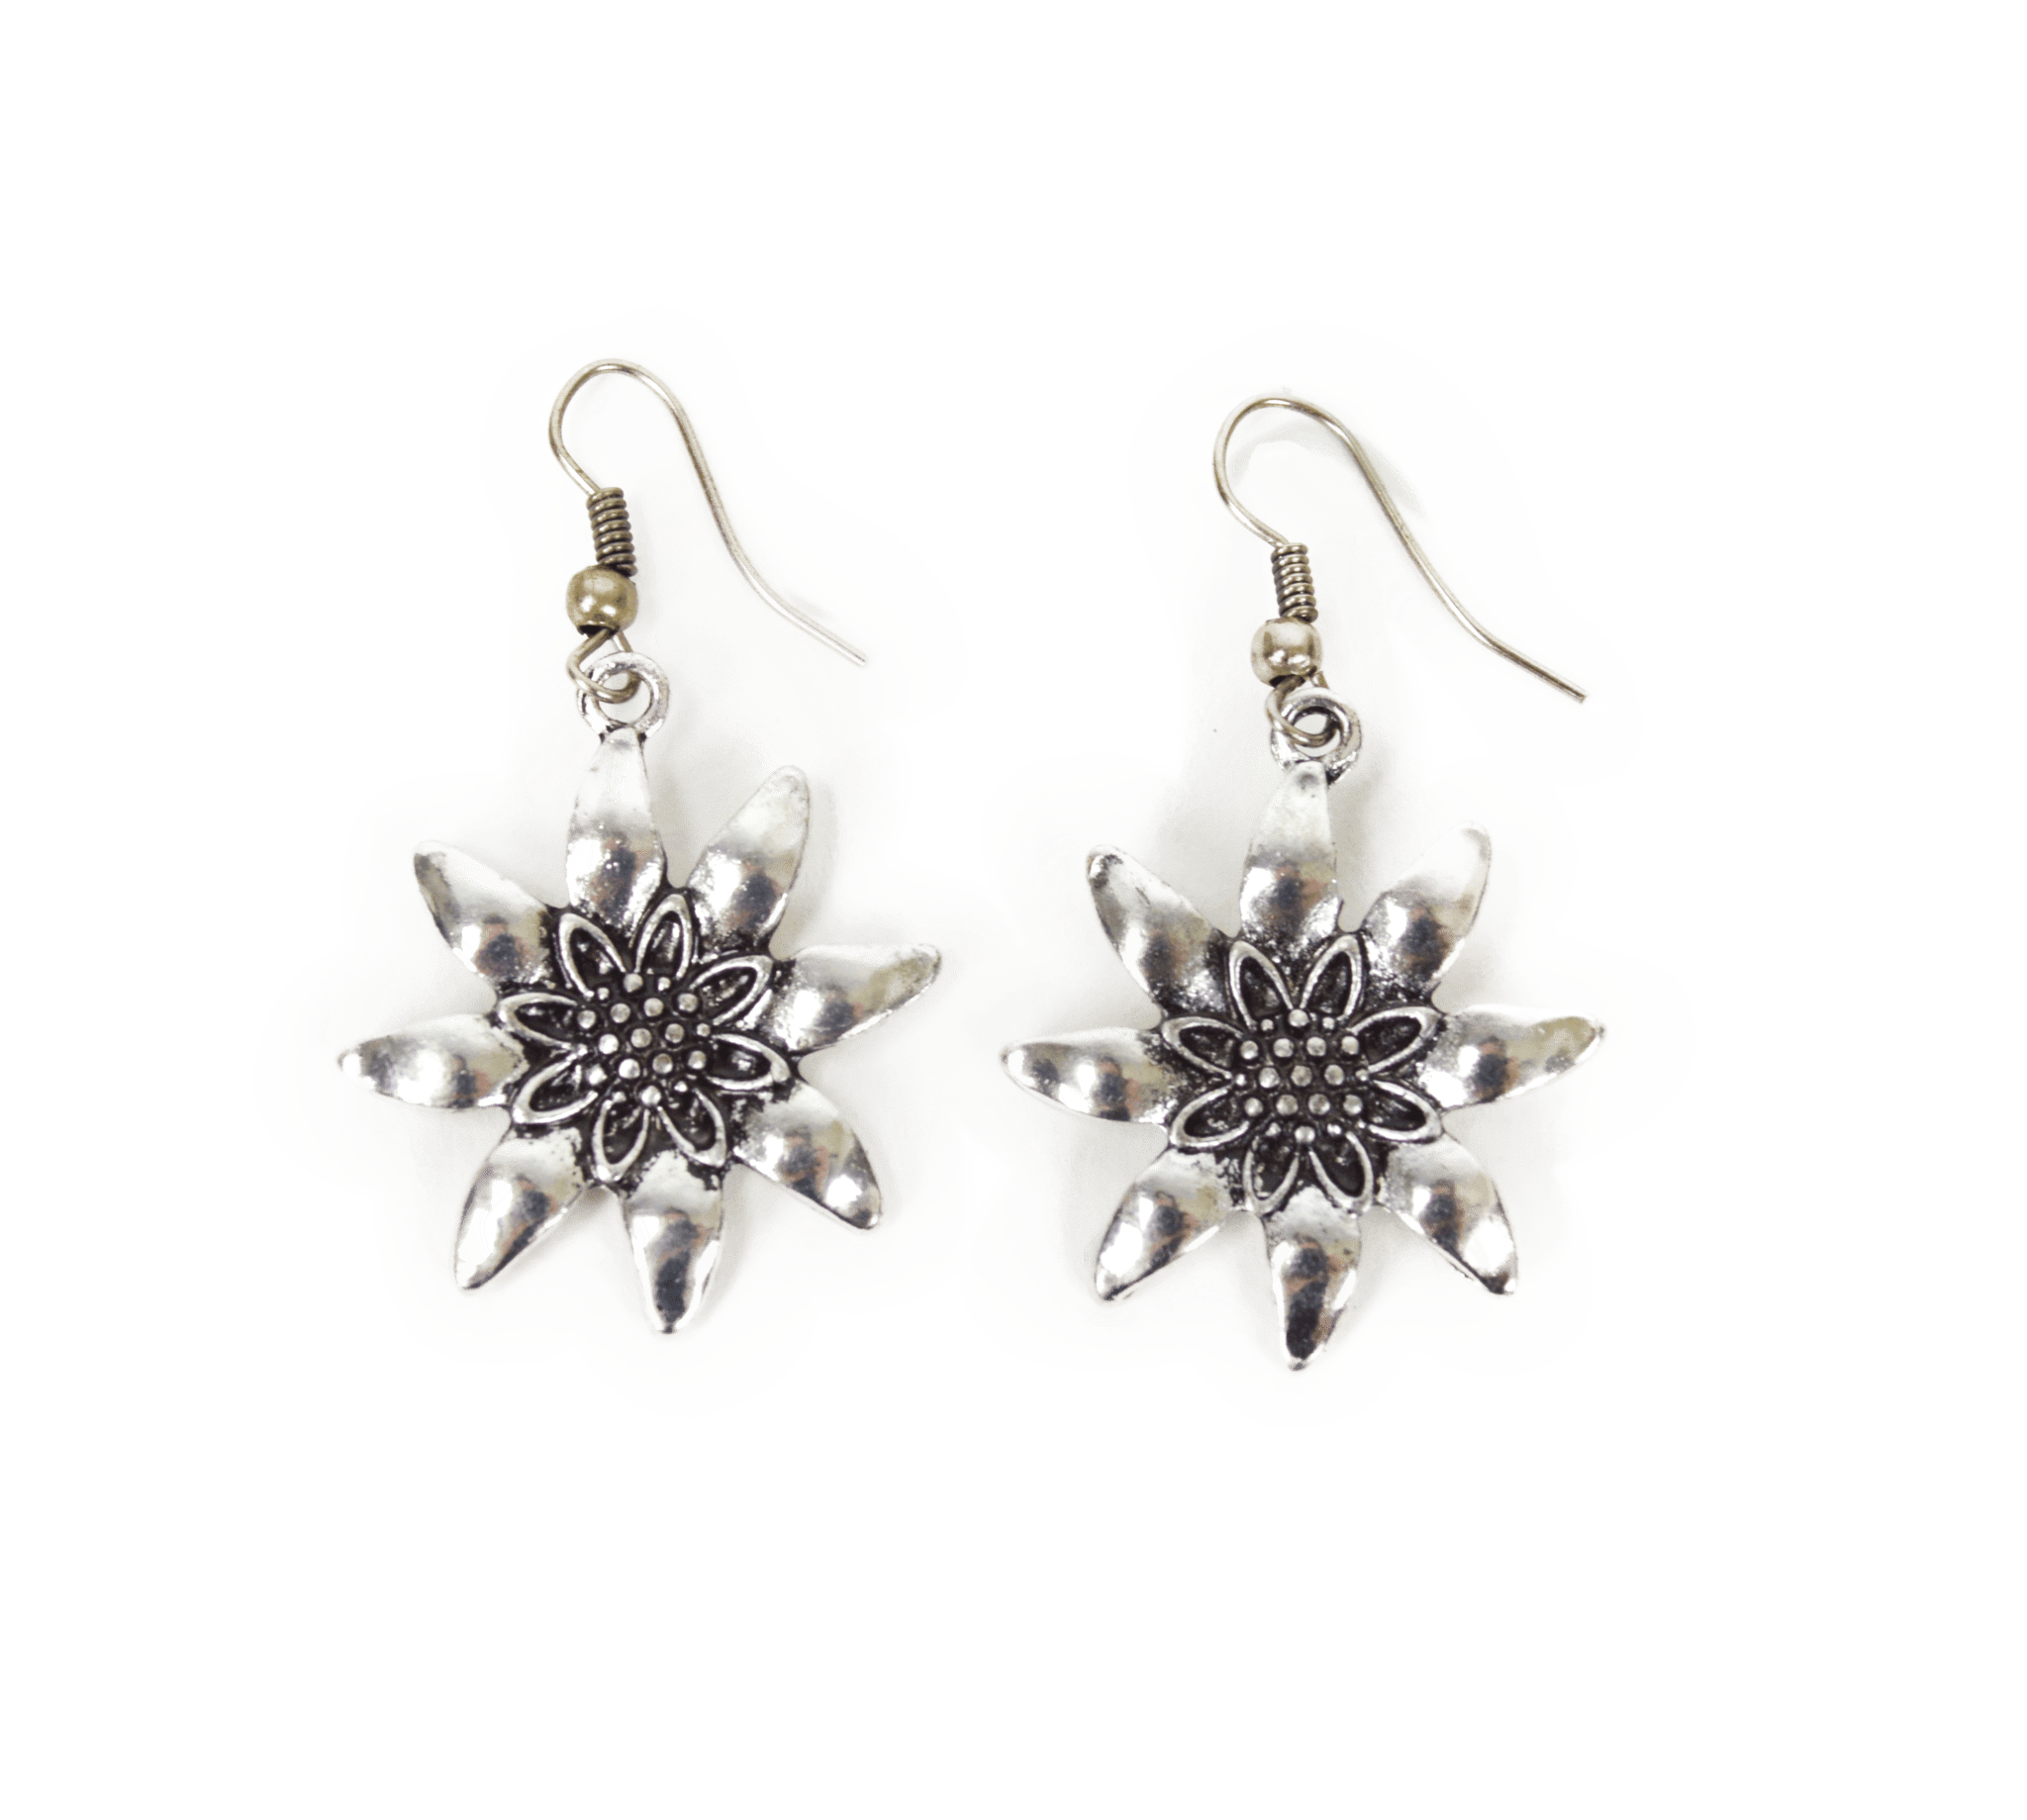 German Edelweiss Earrings - Walmart.com